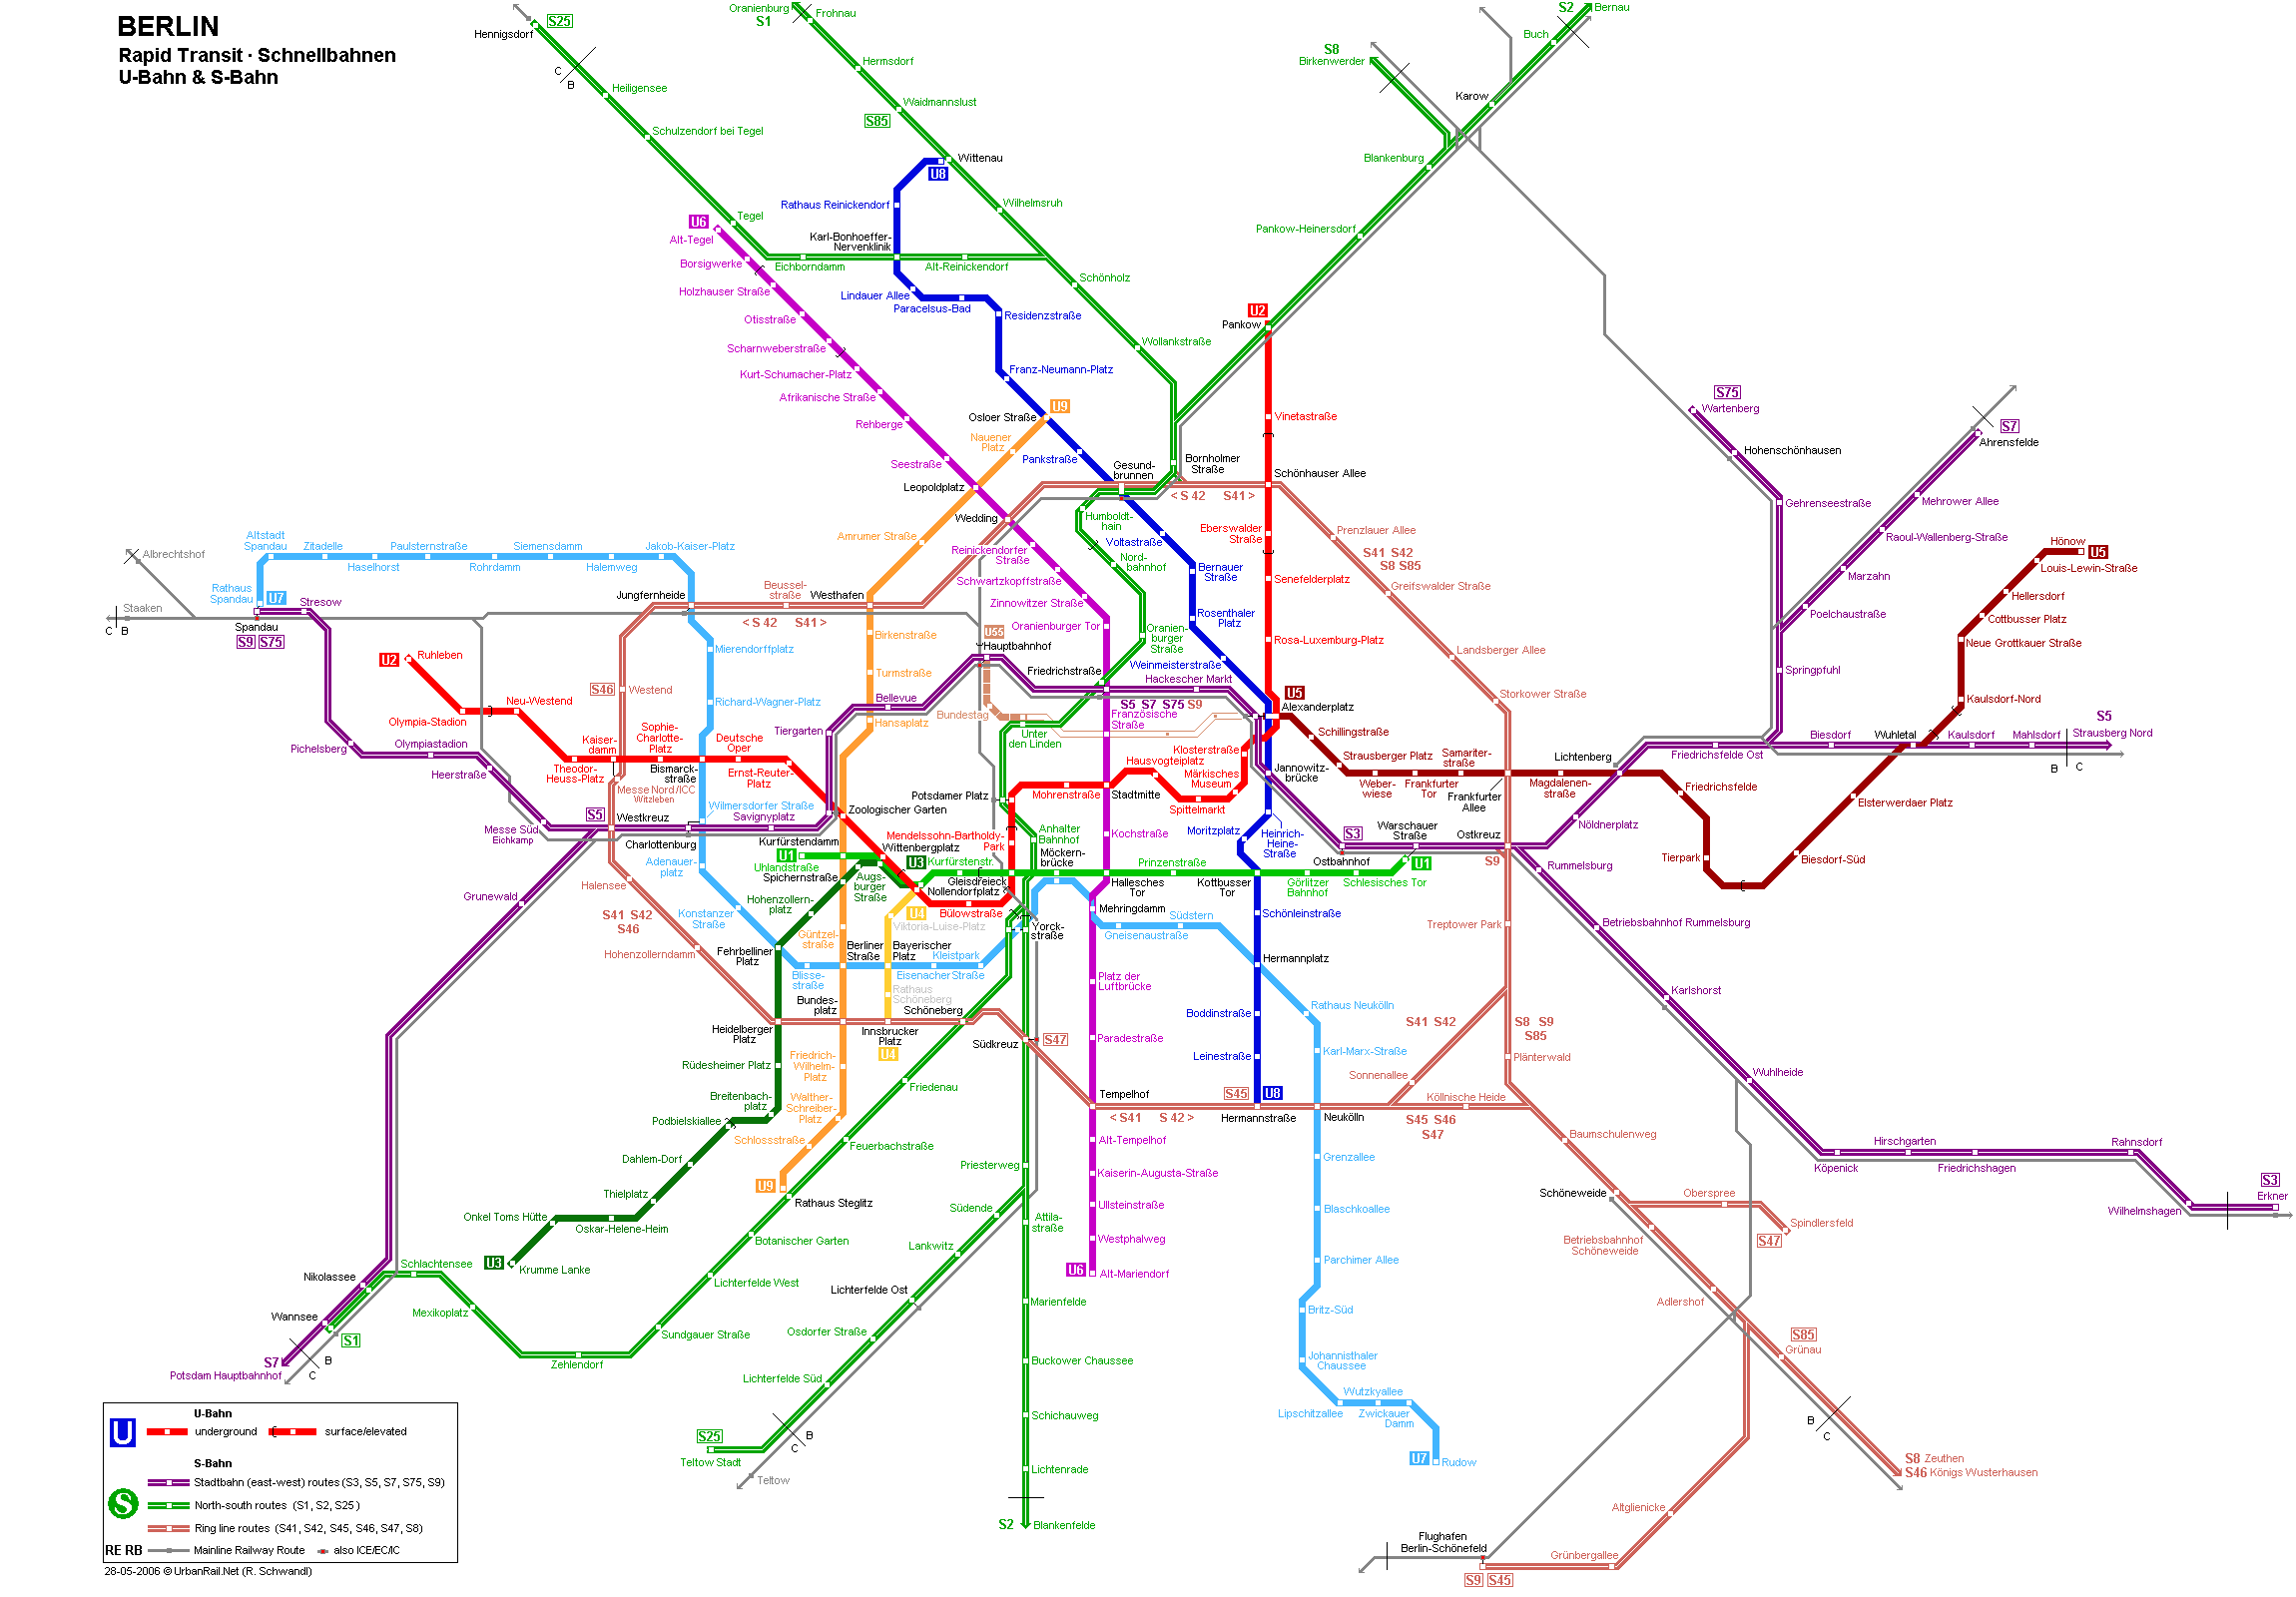 budapest térkép tömegközlekedéssel Berlin térkép, Berlin látnivalóinak és nevezetességeinek térképe  budapest térkép tömegközlekedéssel